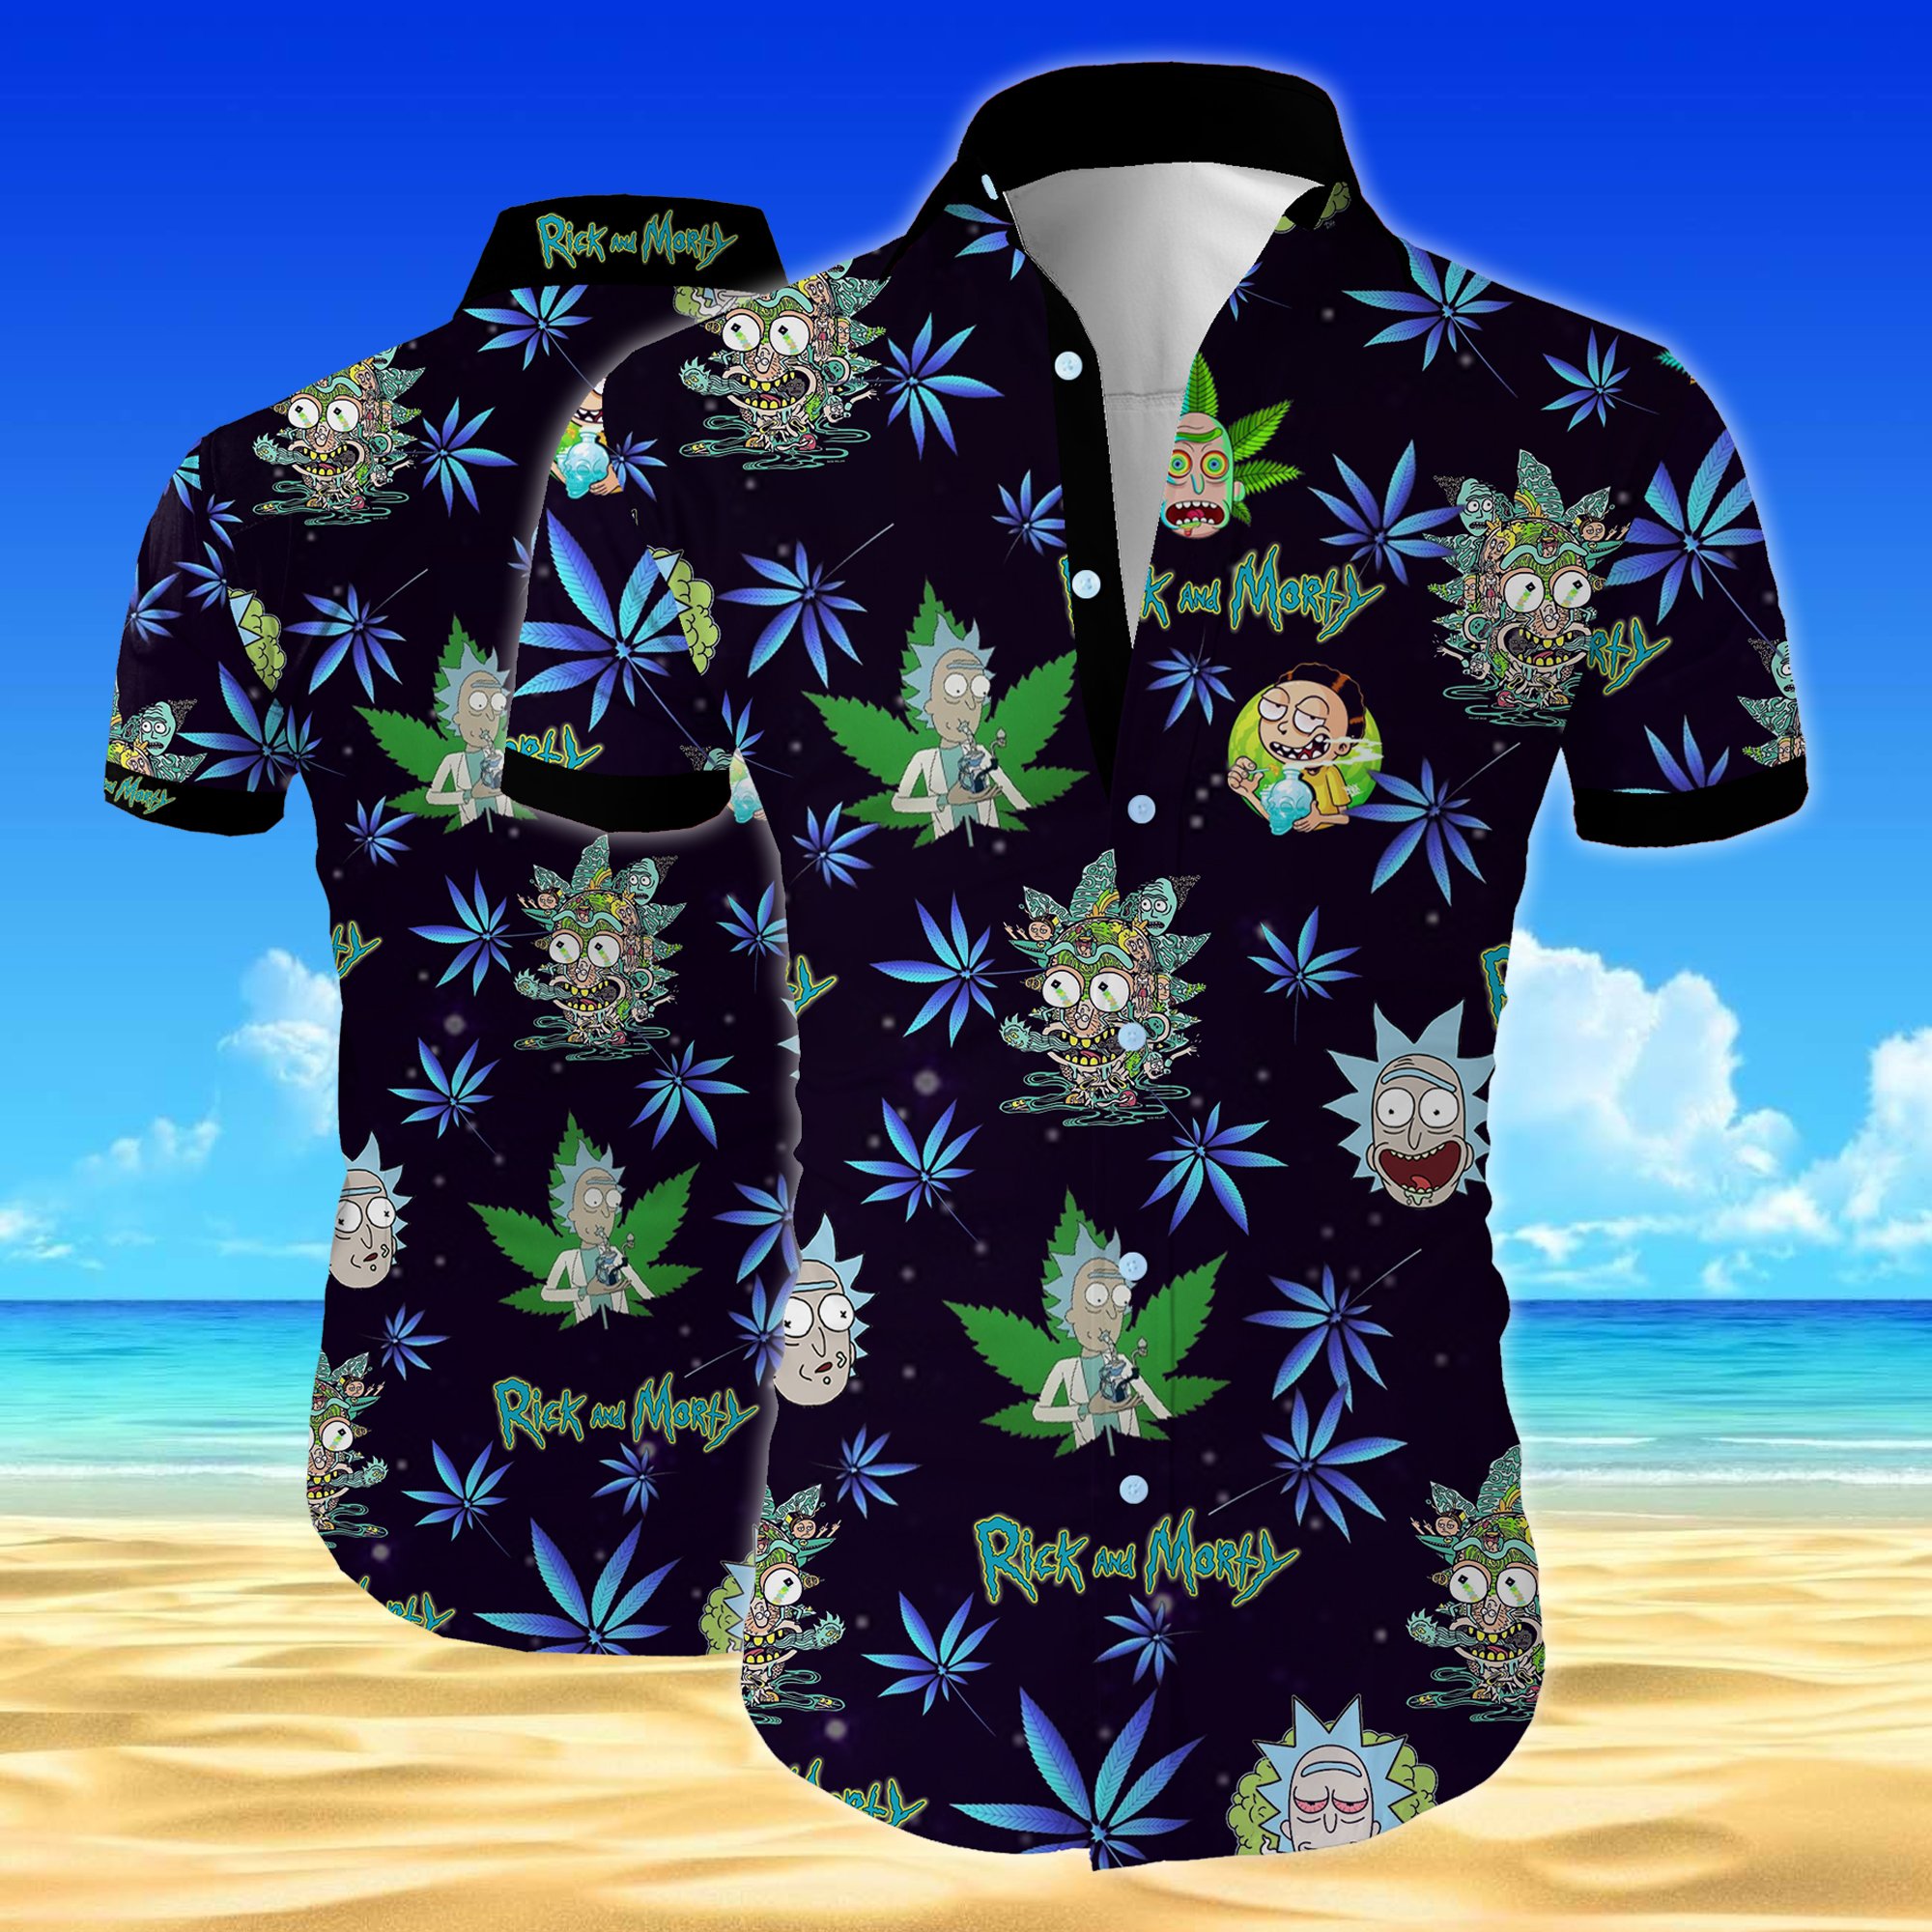 Rick and morty all over printed hawaiian shirt – maria